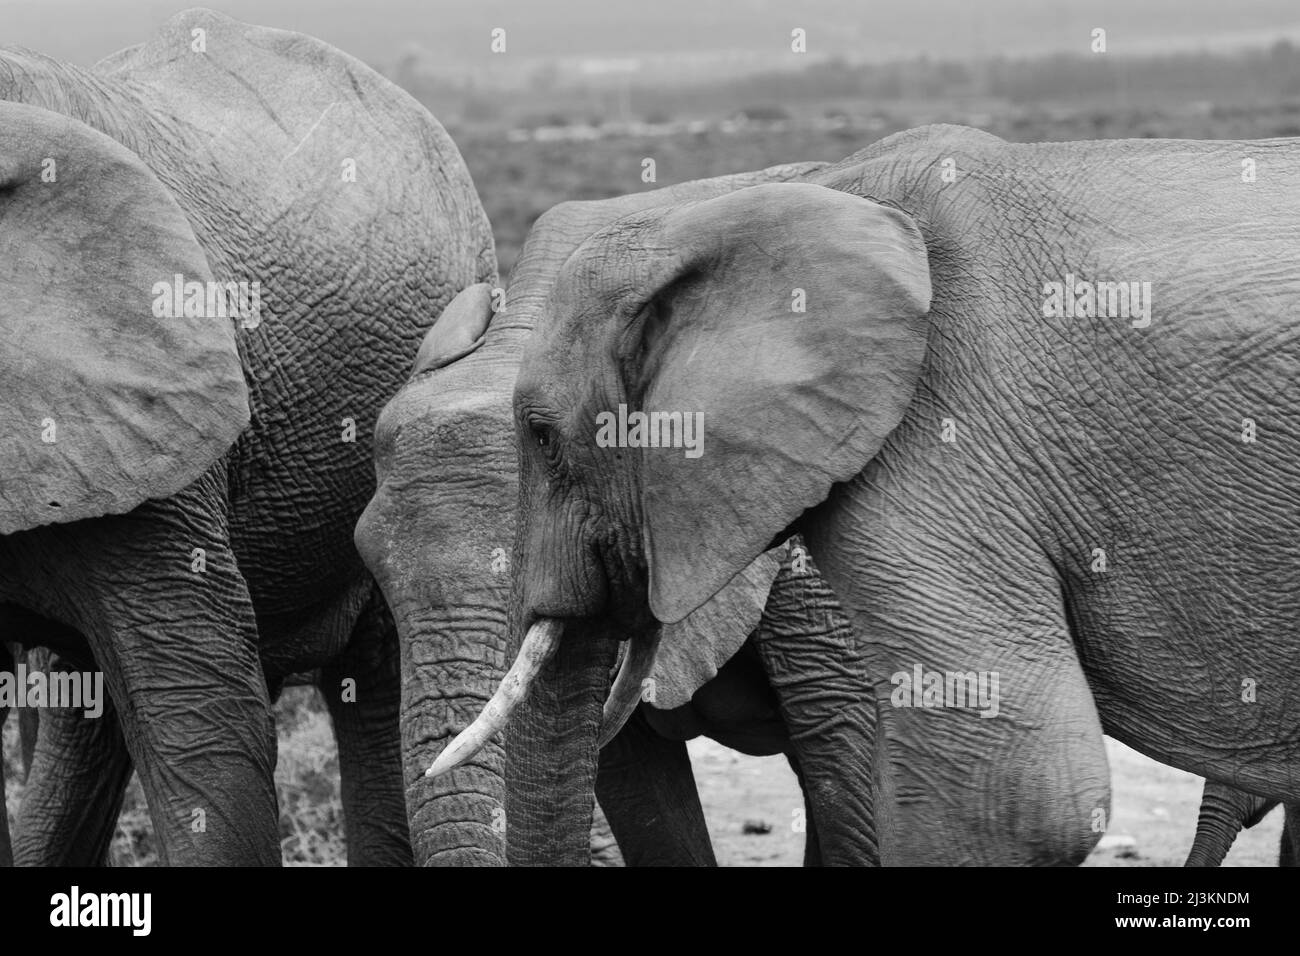 Éléphants d'Afrique (Loxodonta africana) dans la zone de protection marine du parc national de l'éléphant d'Addo, Cap-est de l'Afrique du Sud; Afrique du Sud Banque D'Images